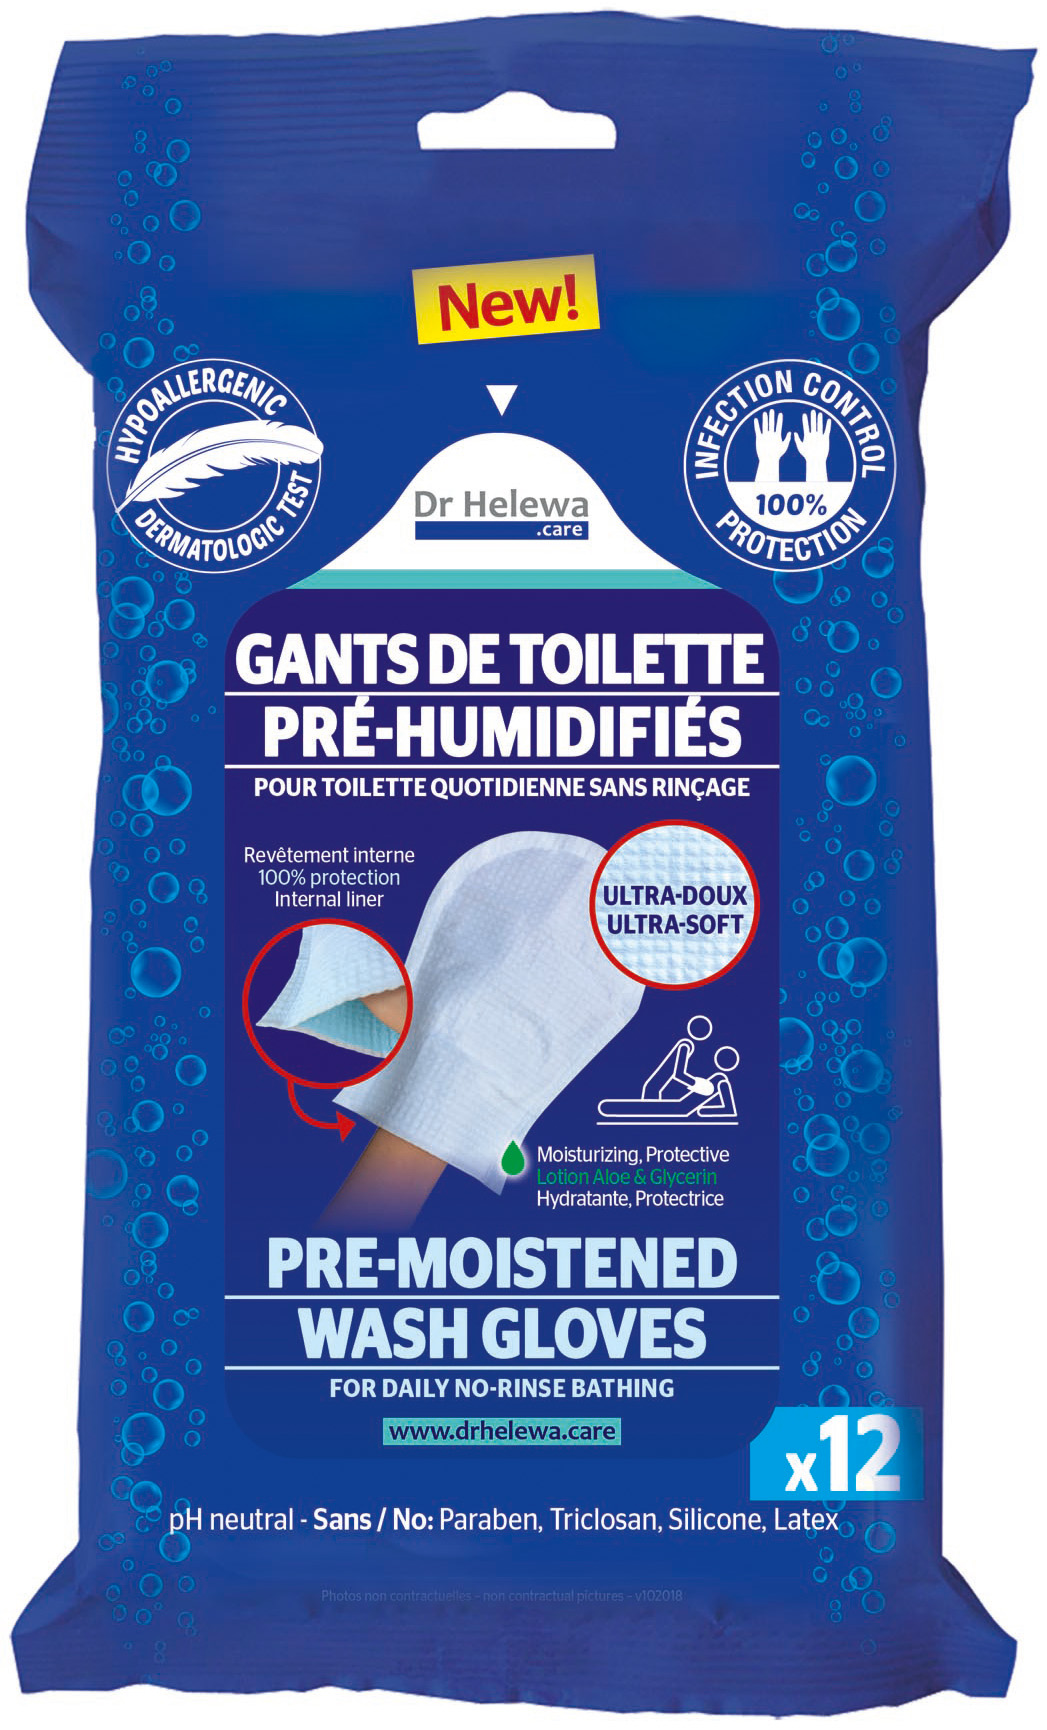 Gants de toilette pré-humidifiés pour toilette quotidienne sans rinçage Dr HELEWA - sachet de 12